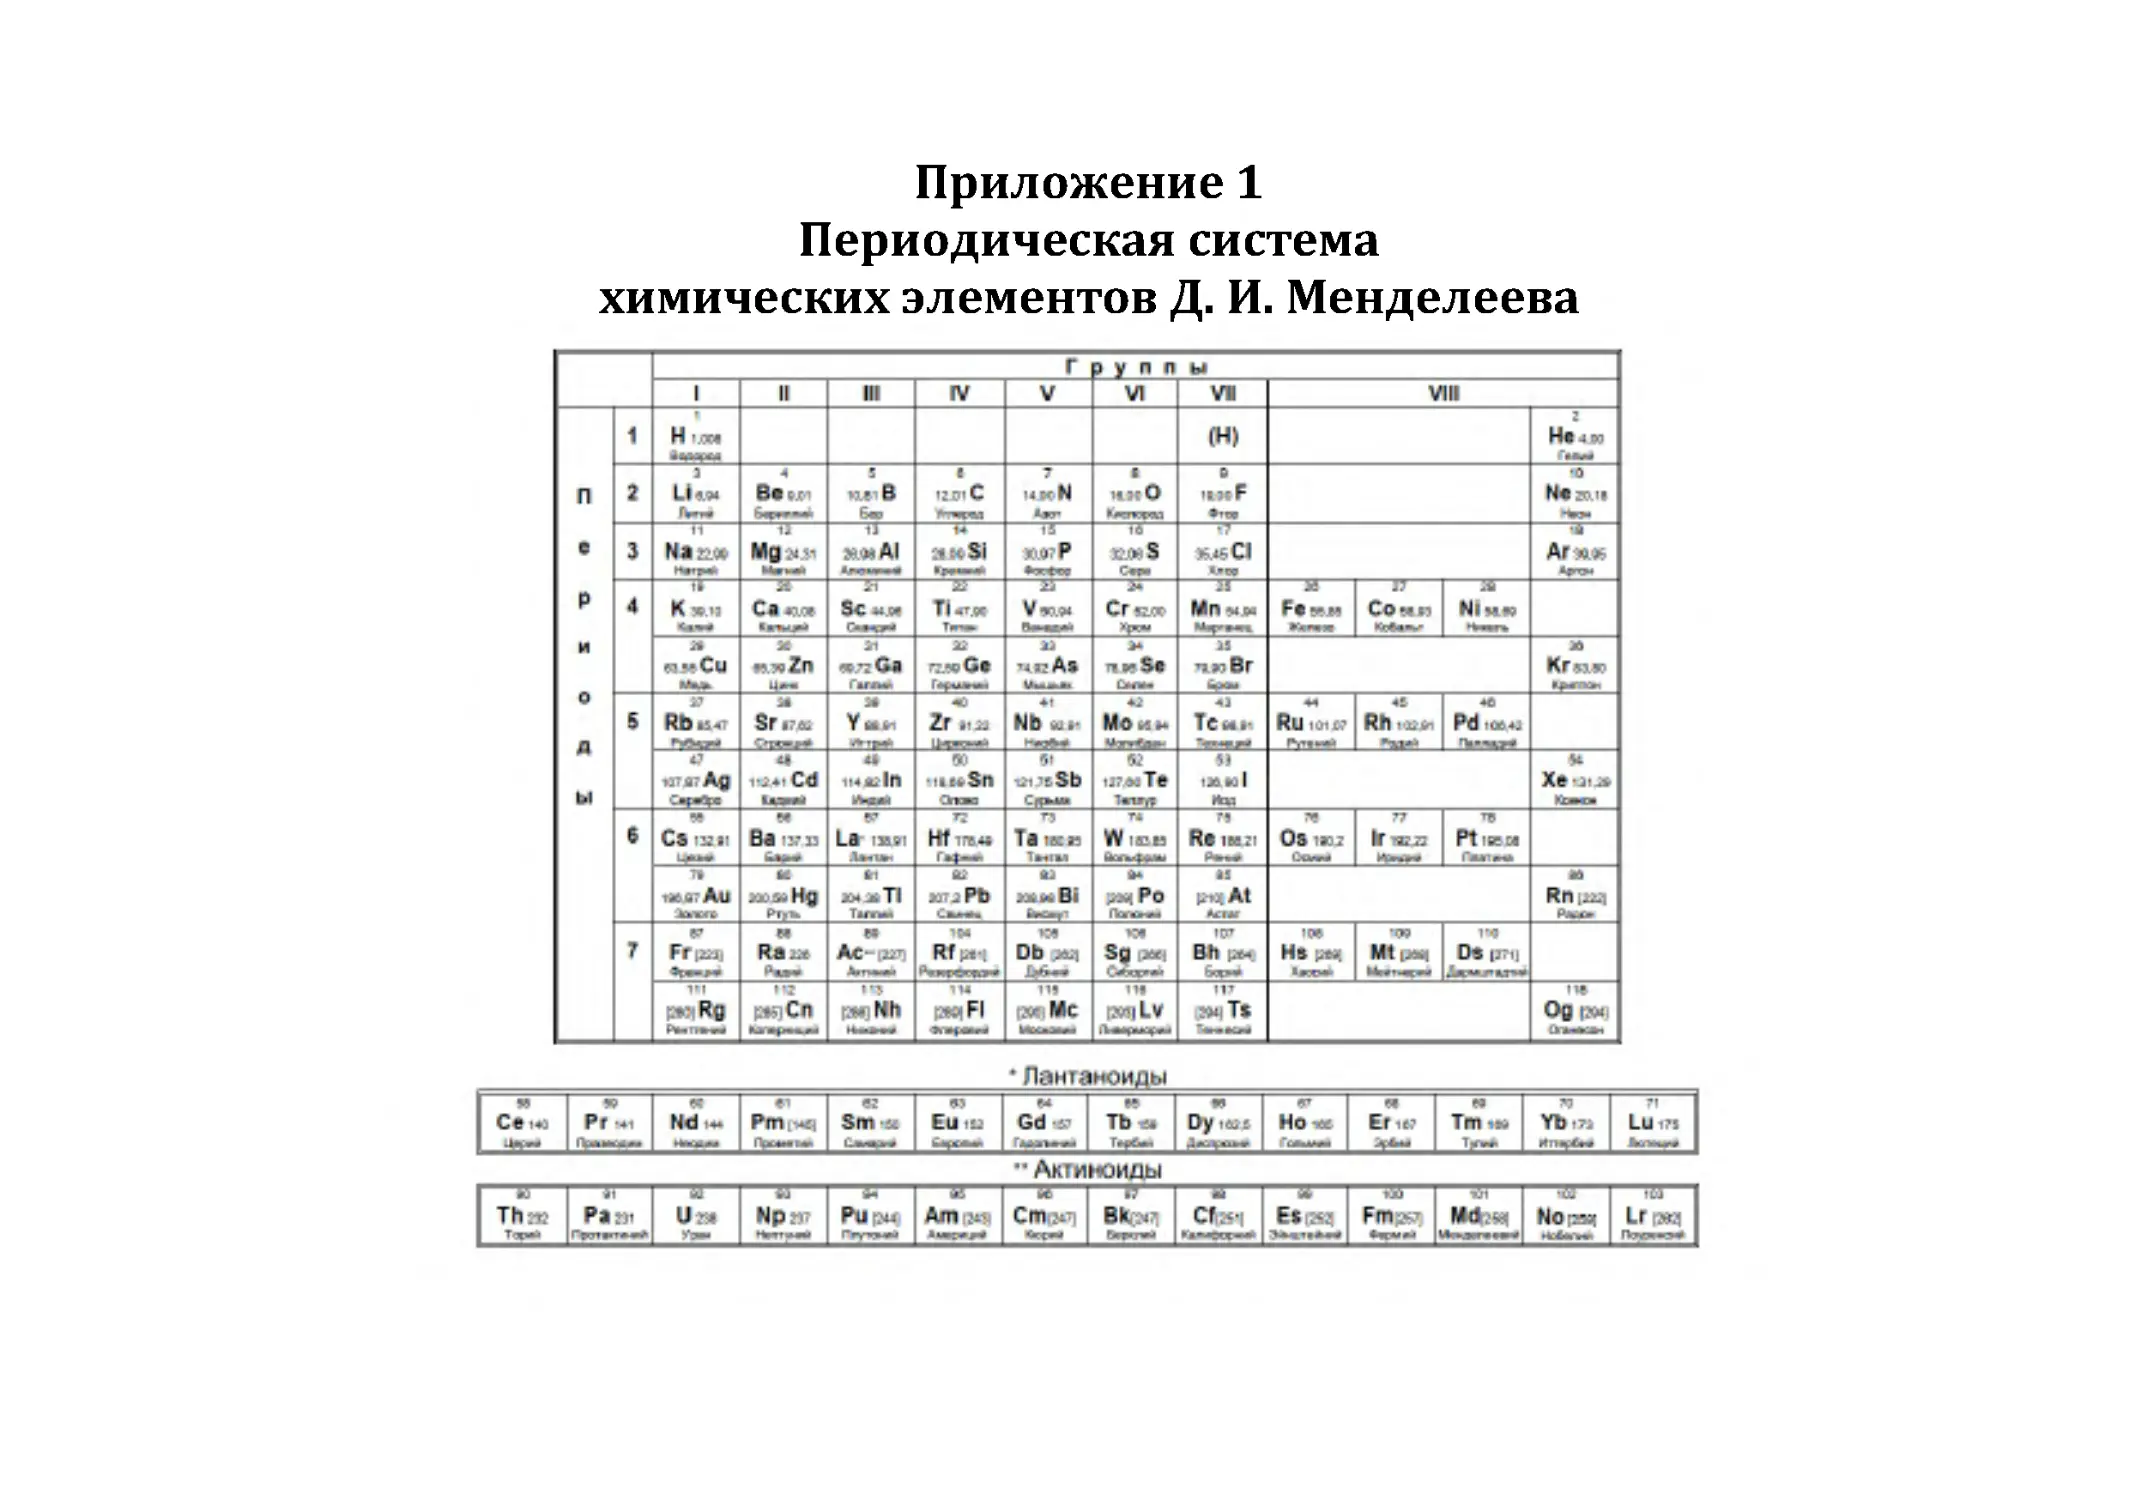 Приложение 1.  Периодическая система  химических элементов Д. И. Менделеева